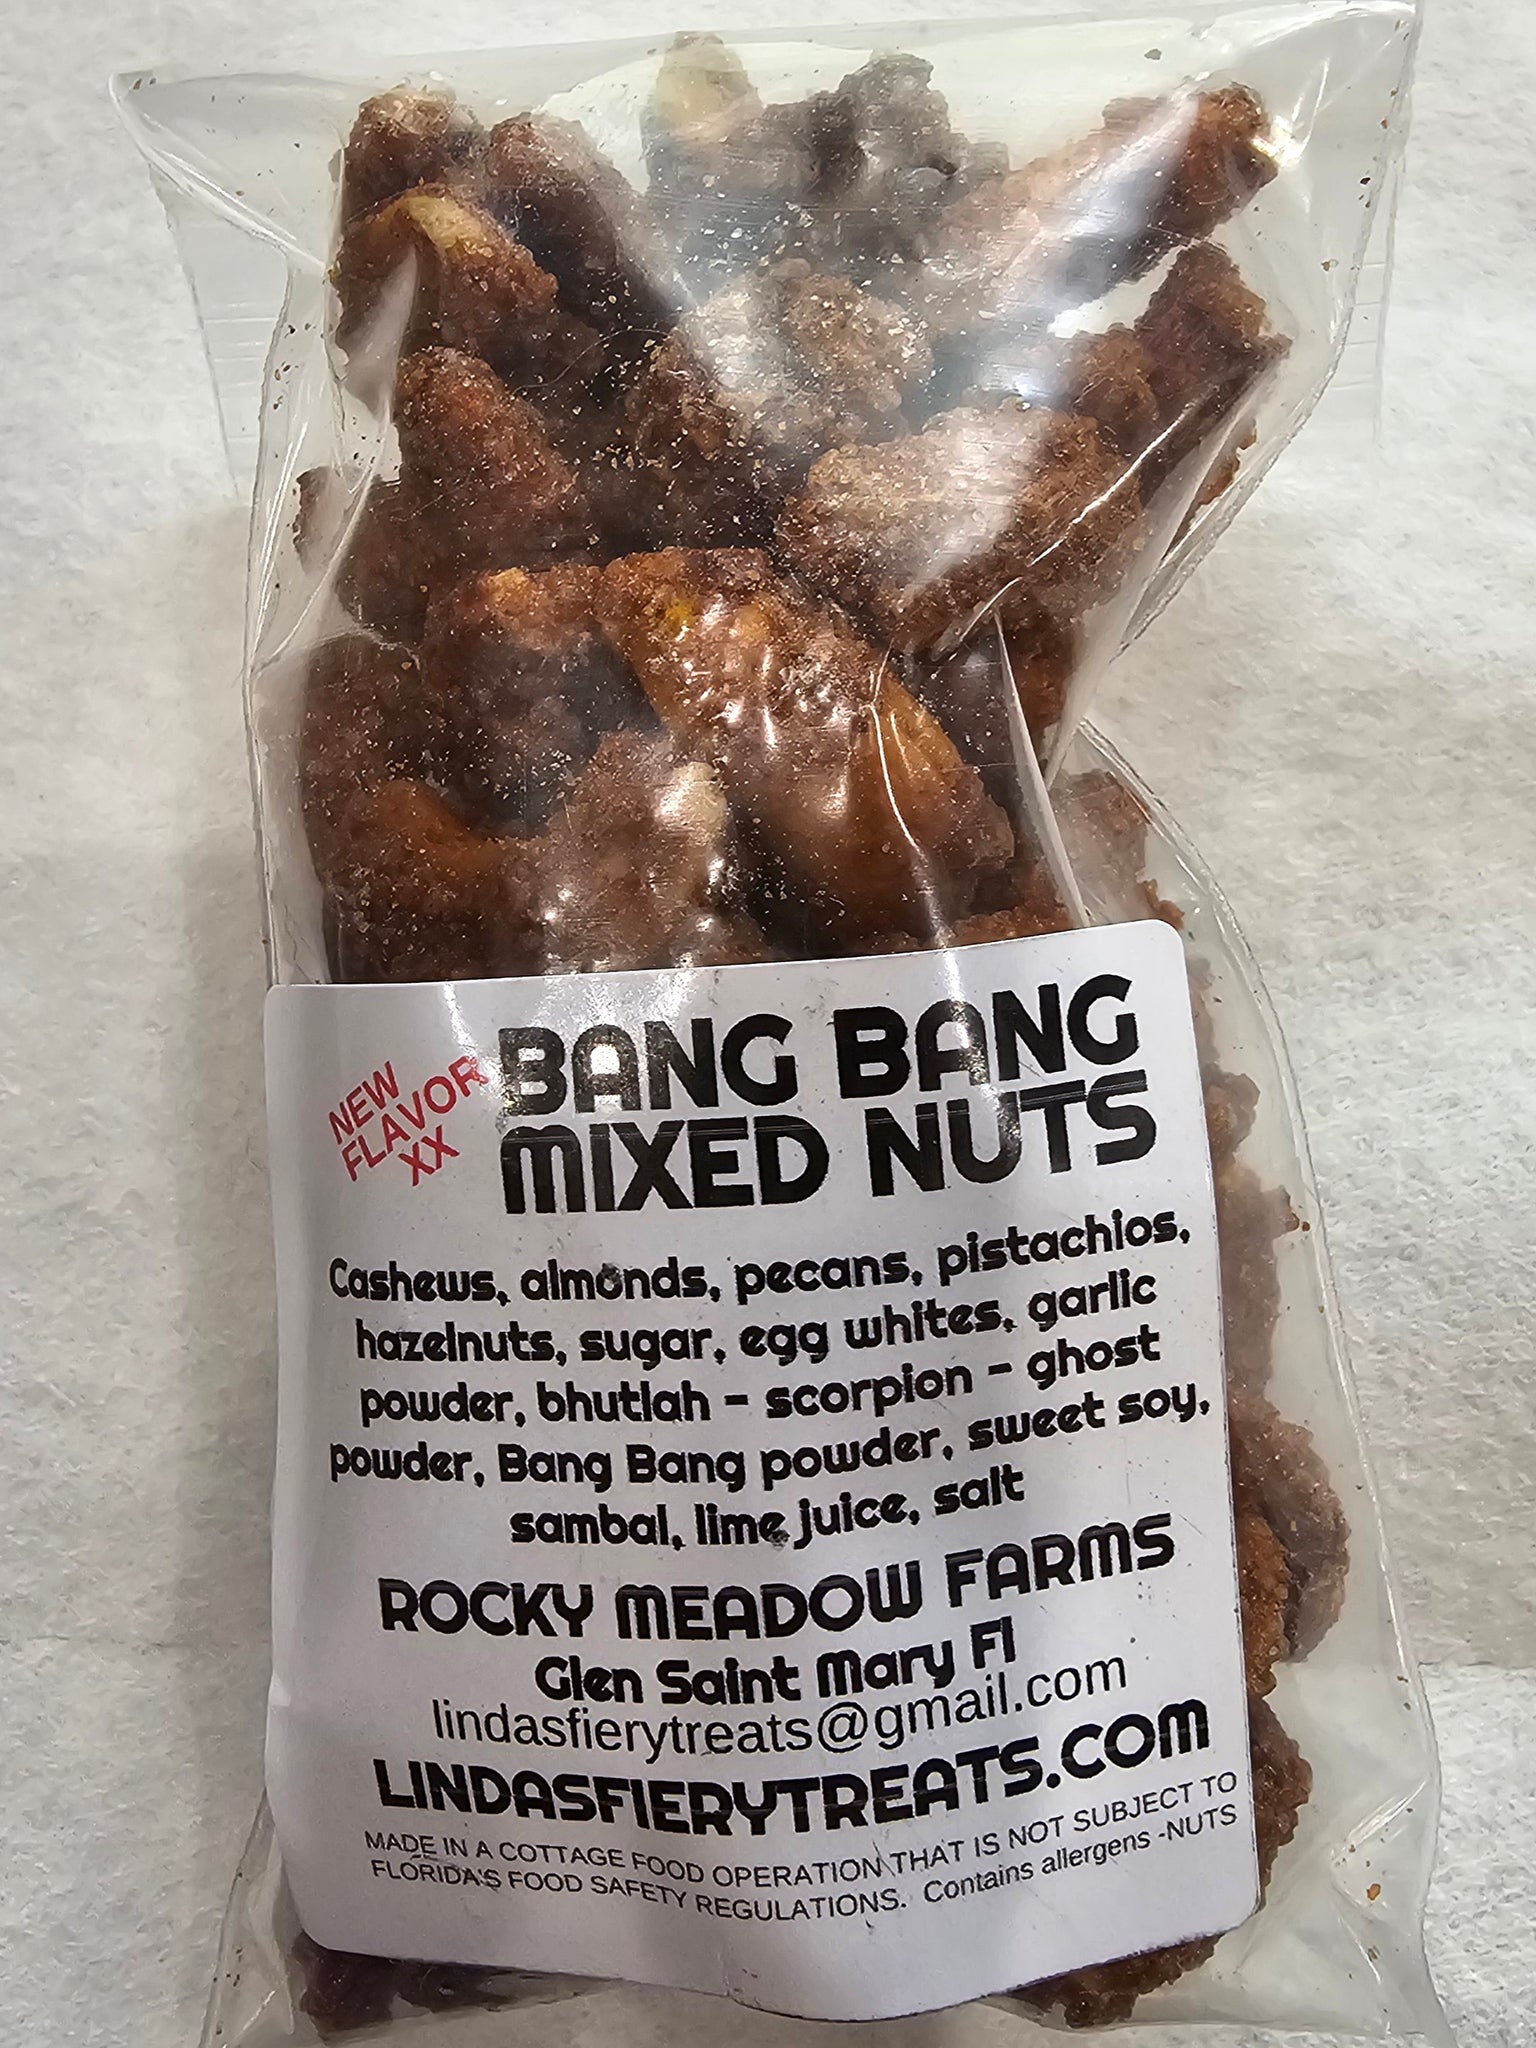 Bang bang spicy nuts.